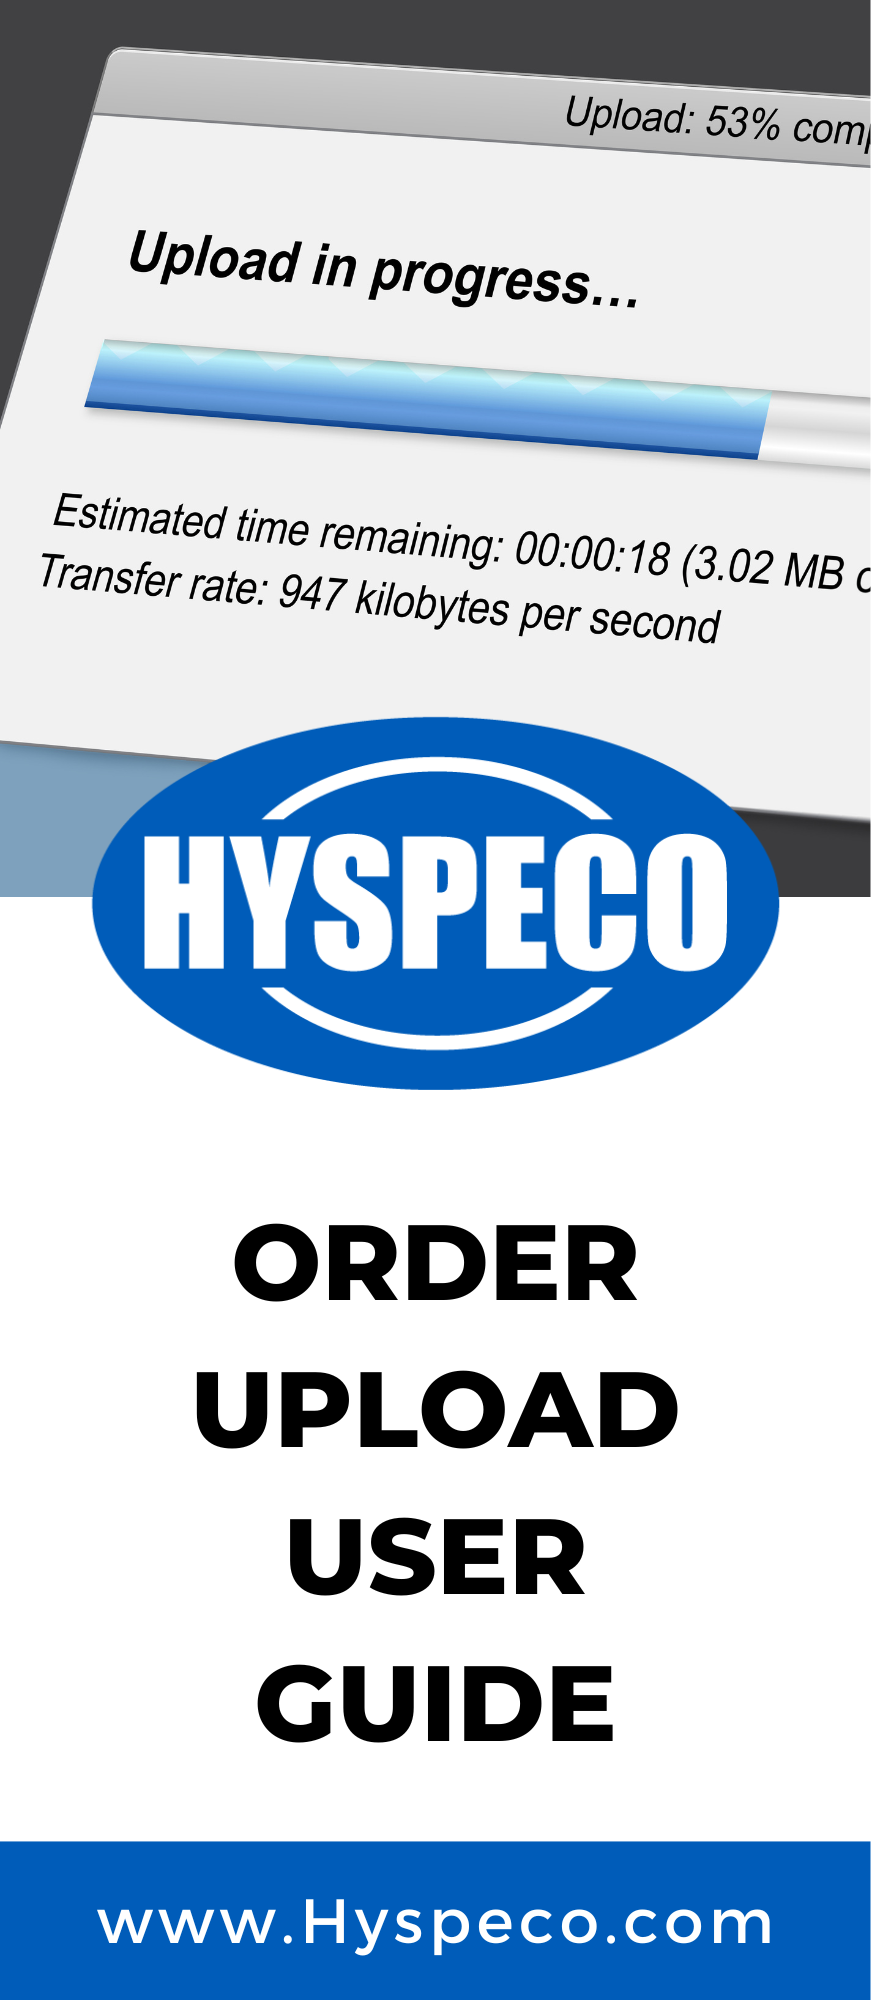 Order Upload Guide